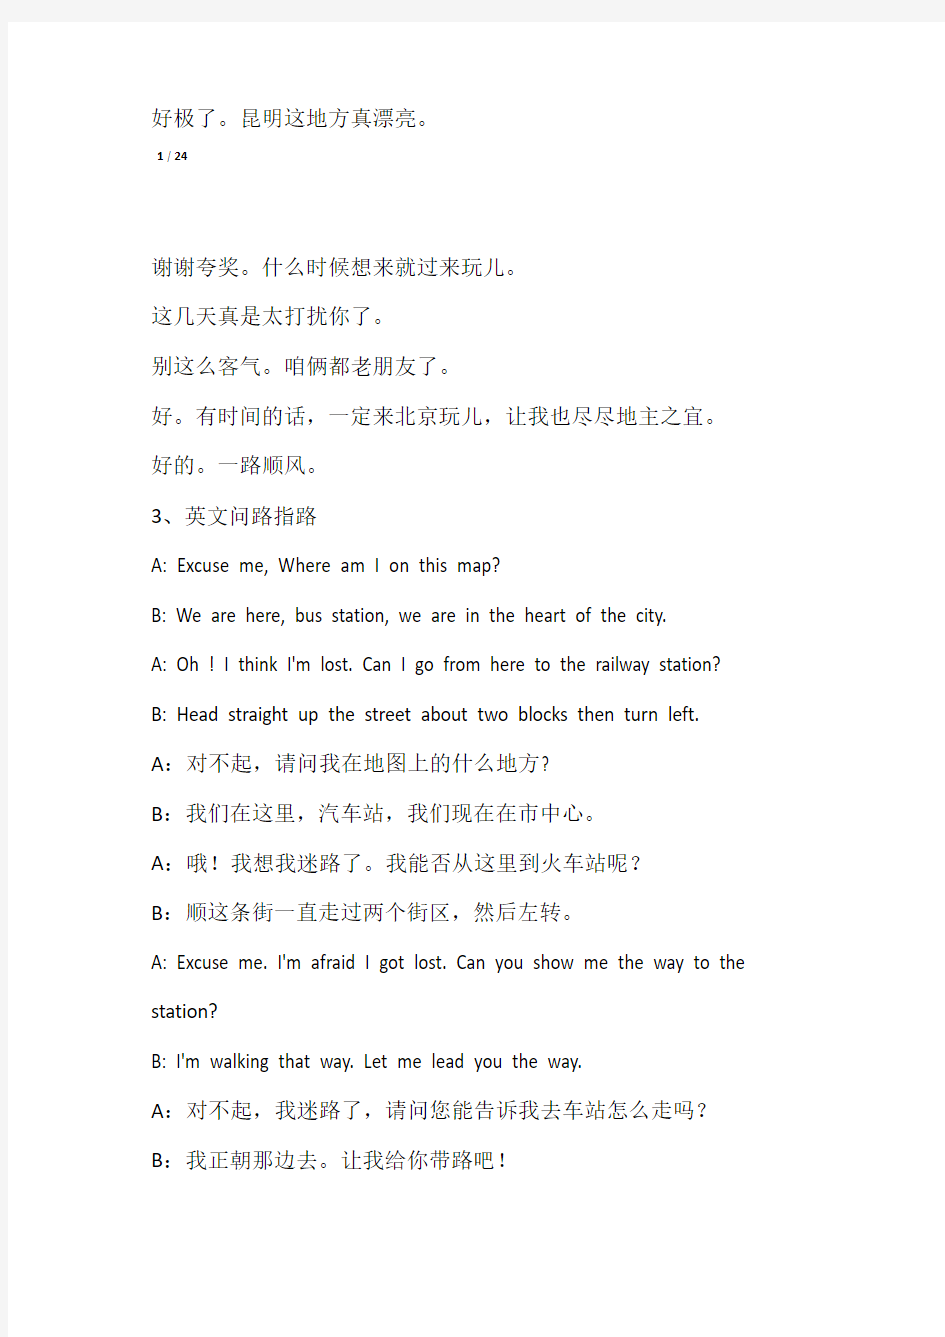 英语口语常用21个场景对话可对照汉语翻译